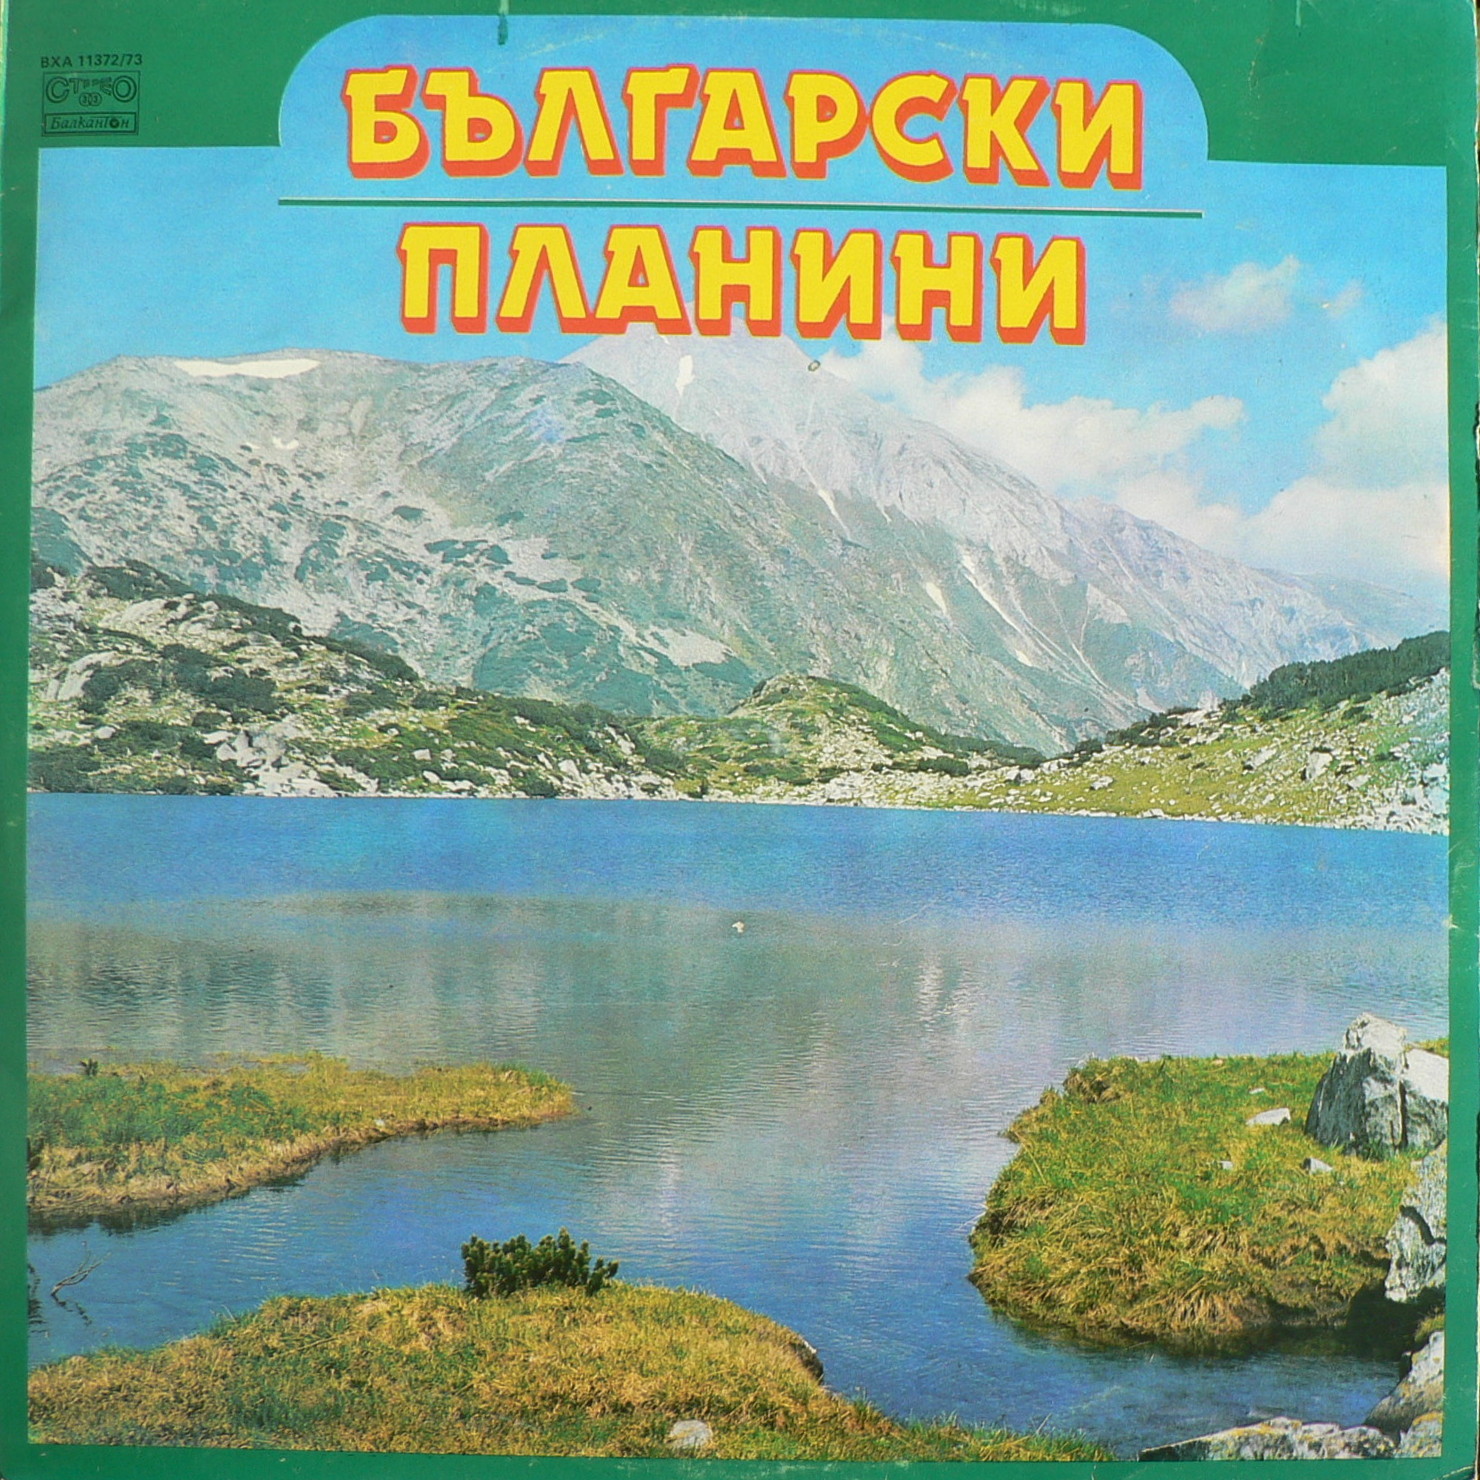 Български планини